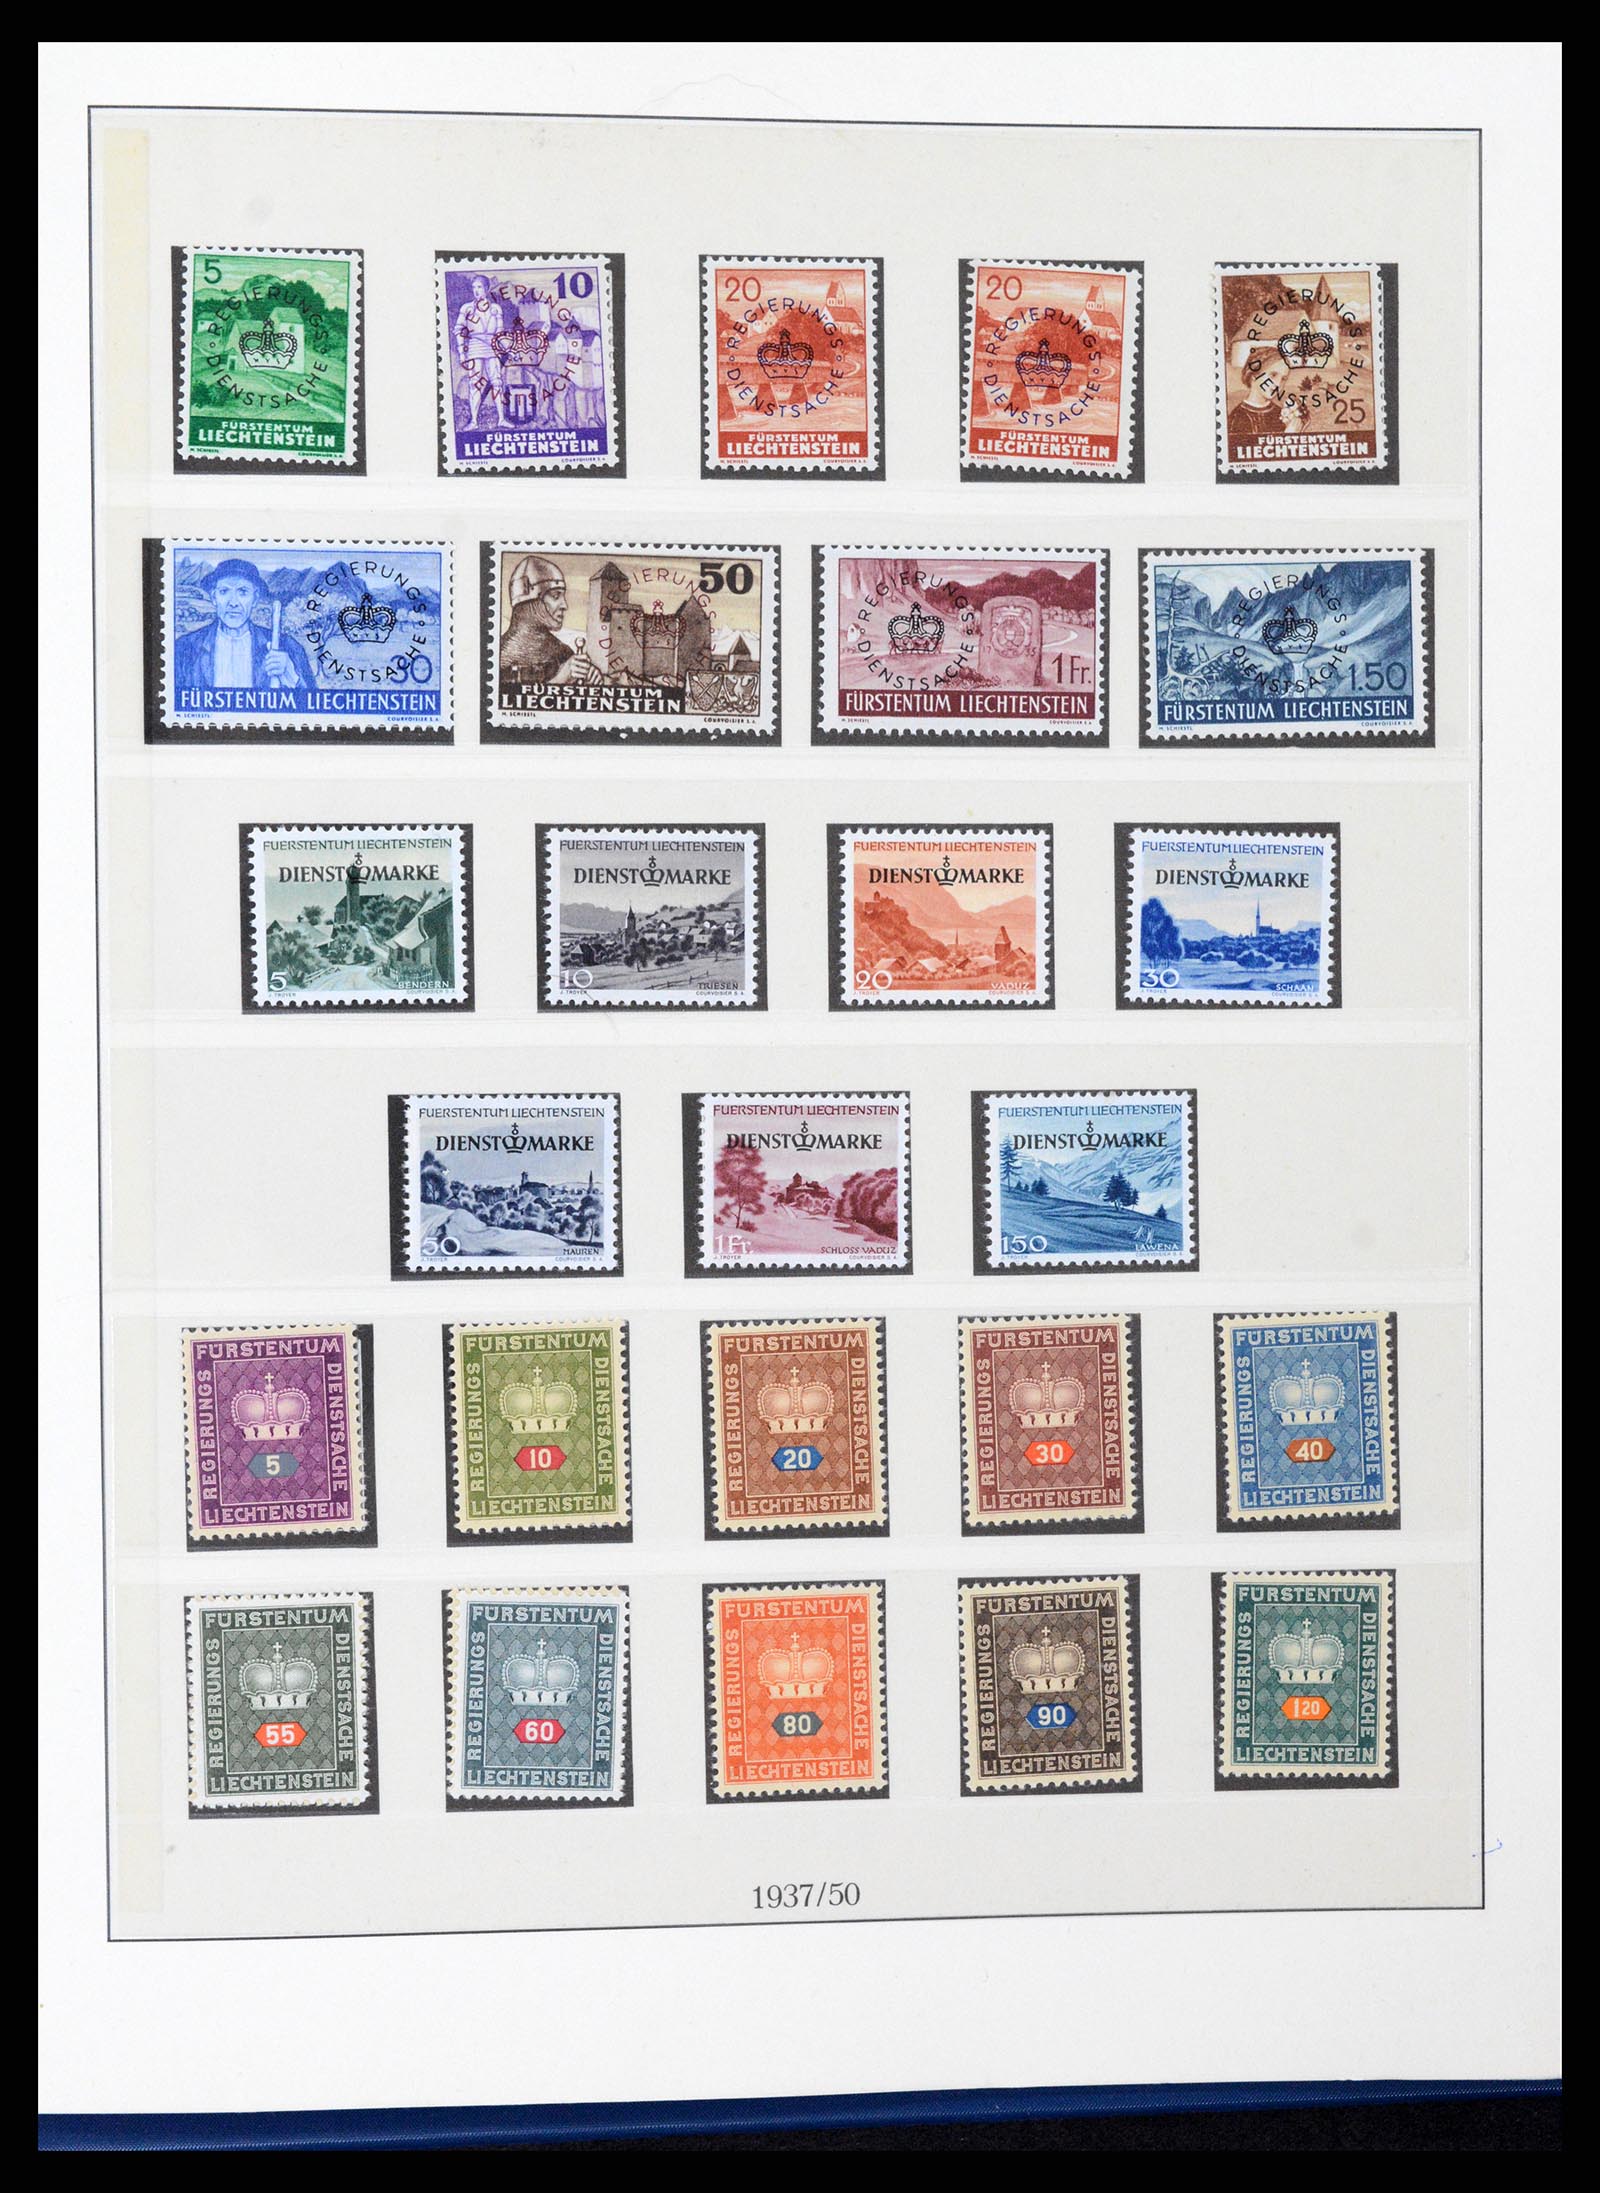 37295 032 - Stamp collection 37295 Liechtenstein 1912-2009.